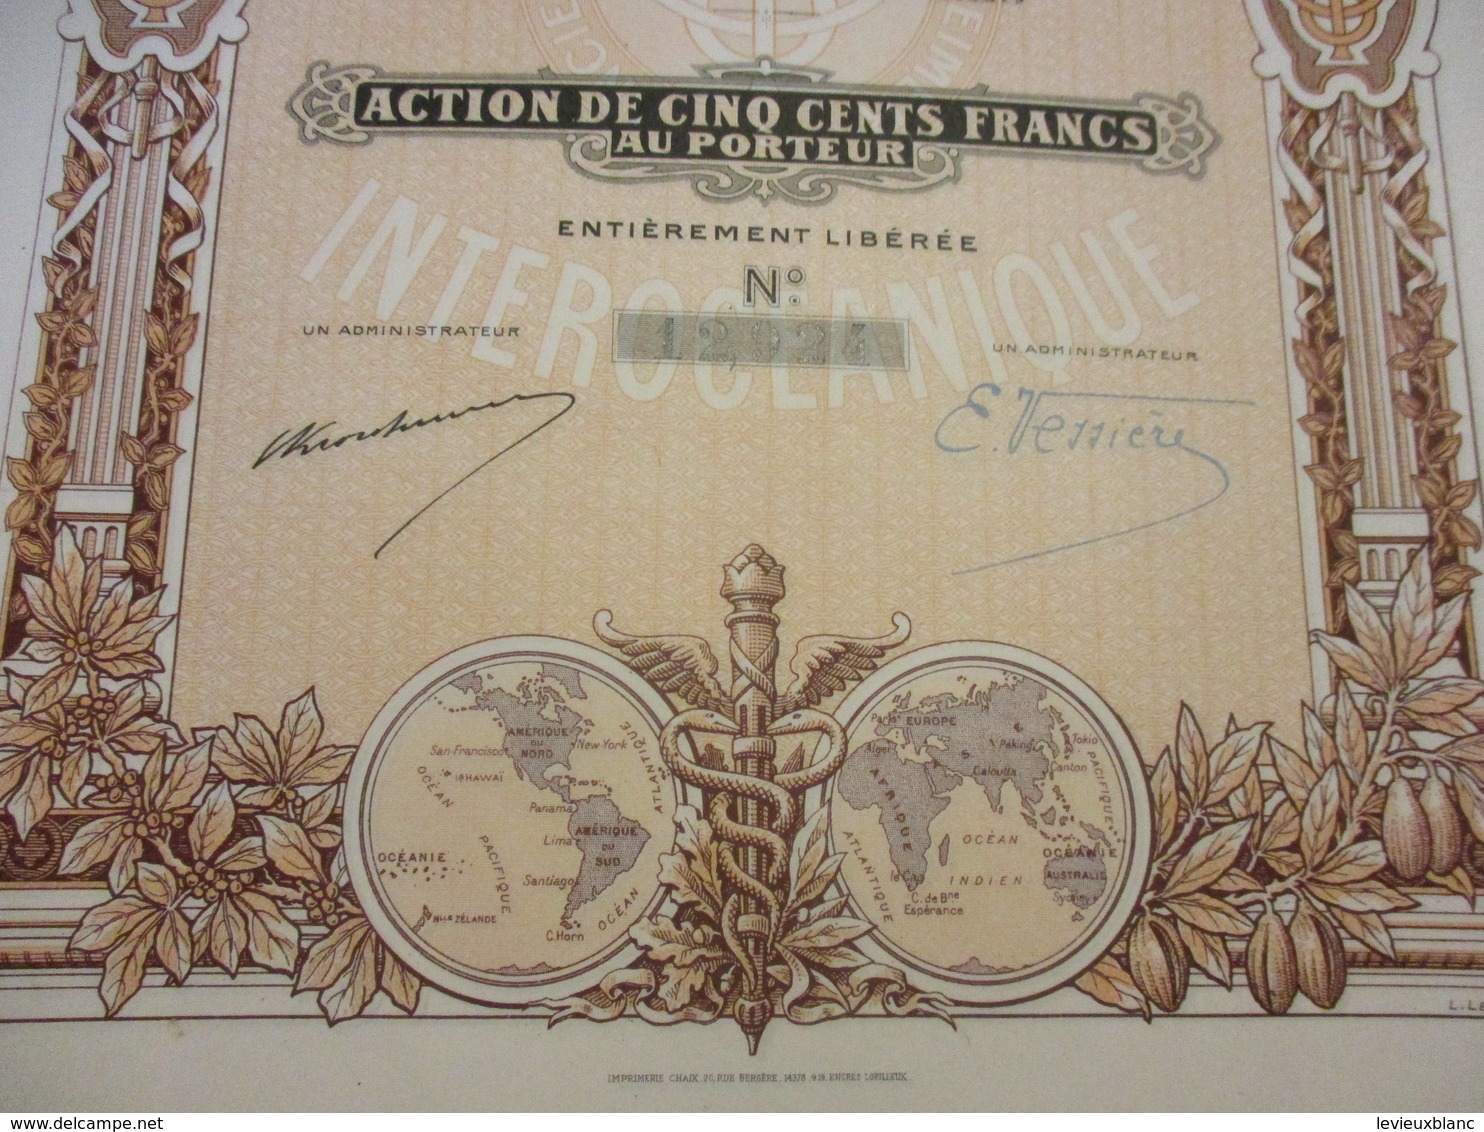 Action De 100 Francs  Au Porteur Entièrement Libérée/Aerocrete SA France Matériaux Modernes De Construction/1927  ACT228 - Industrie